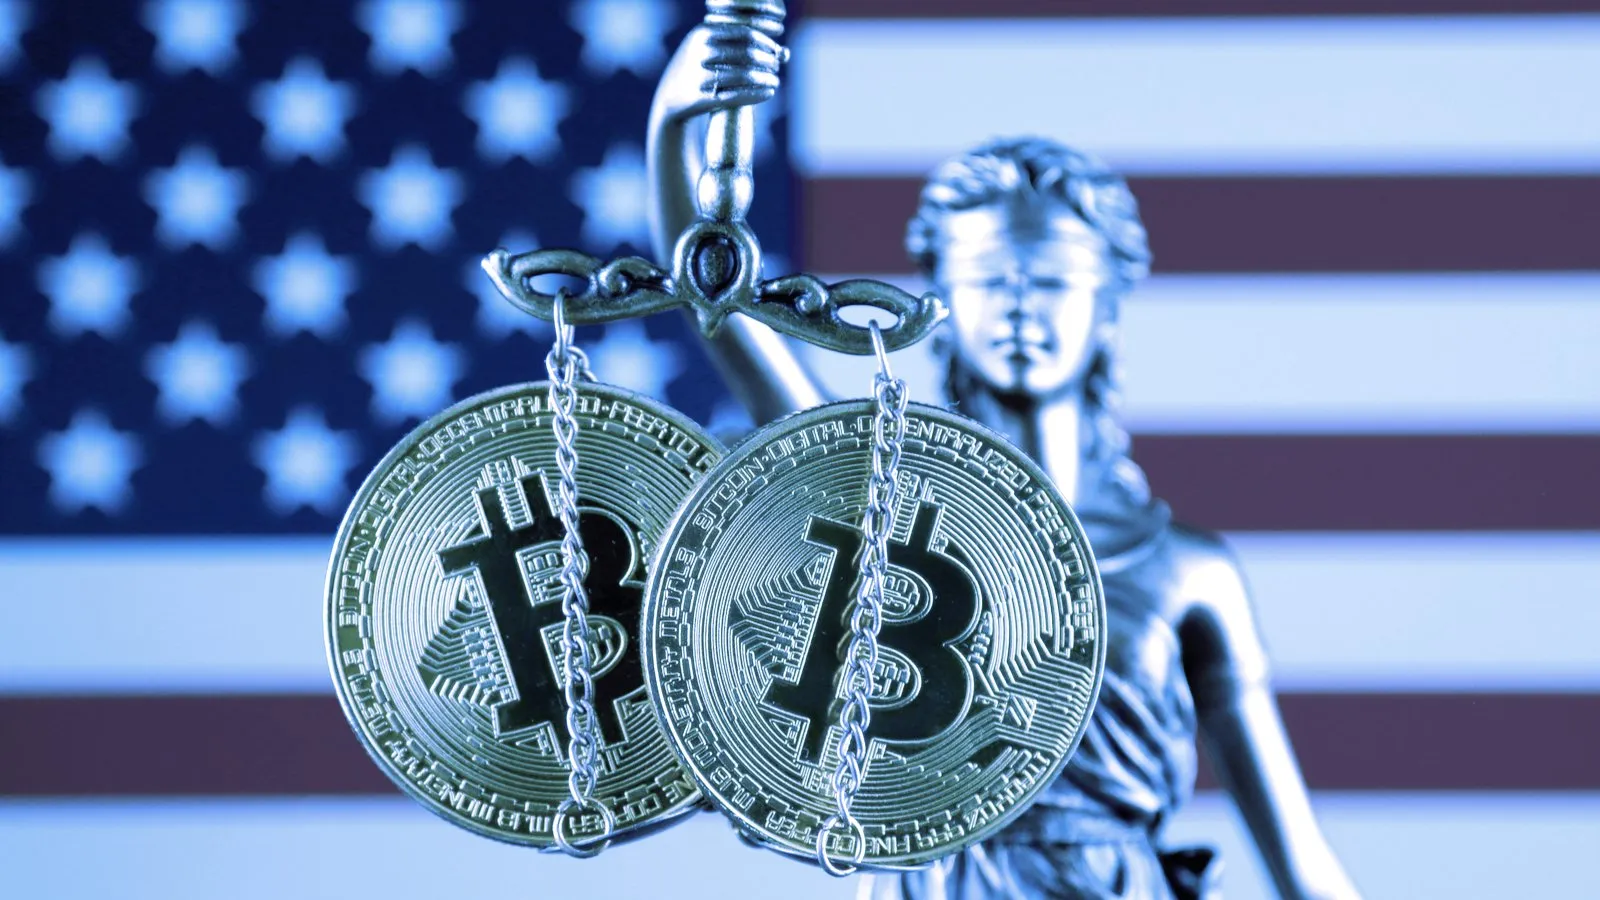 Los reguladores de Estados Unidos redoblan la atención a la política de criptomonedas. Imagen: Shutterstock